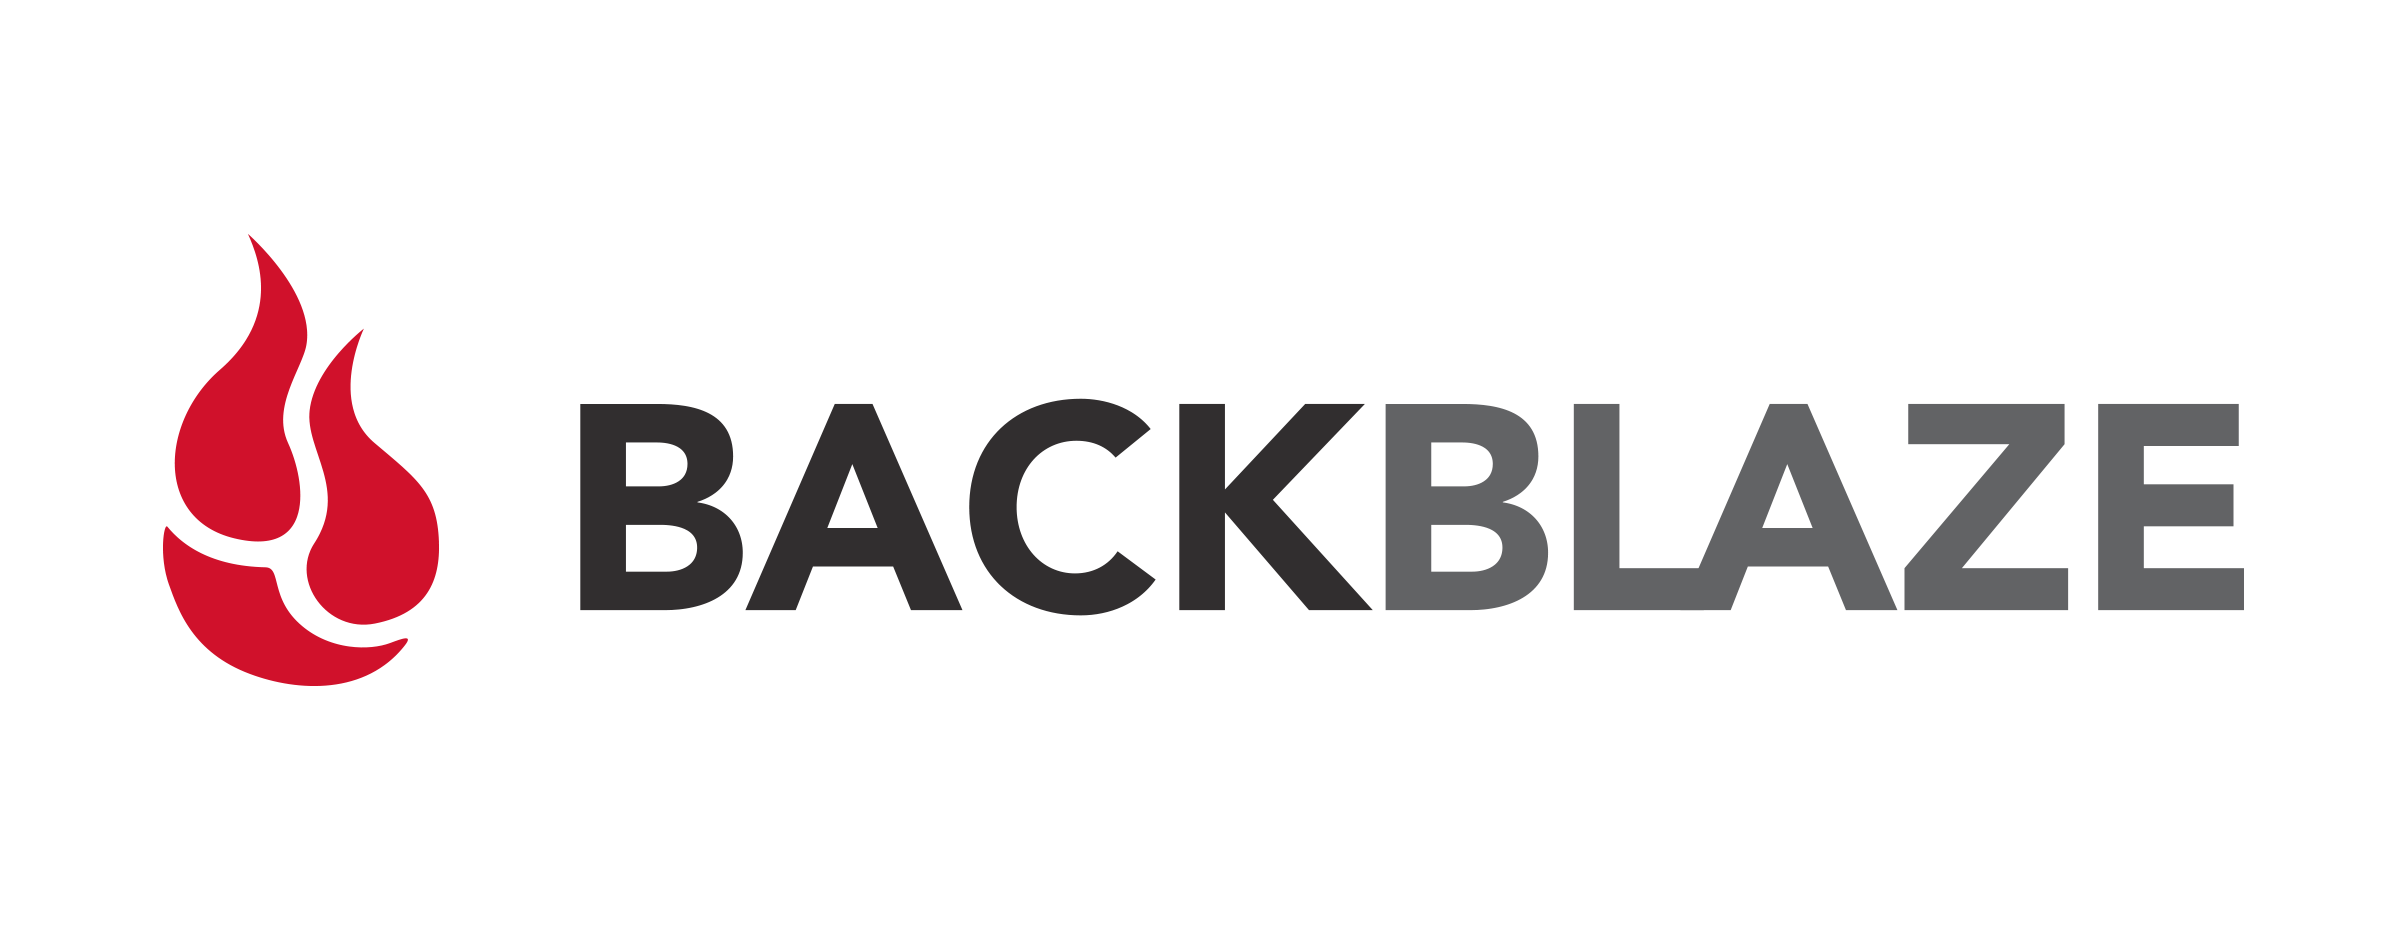 backblaze for servers